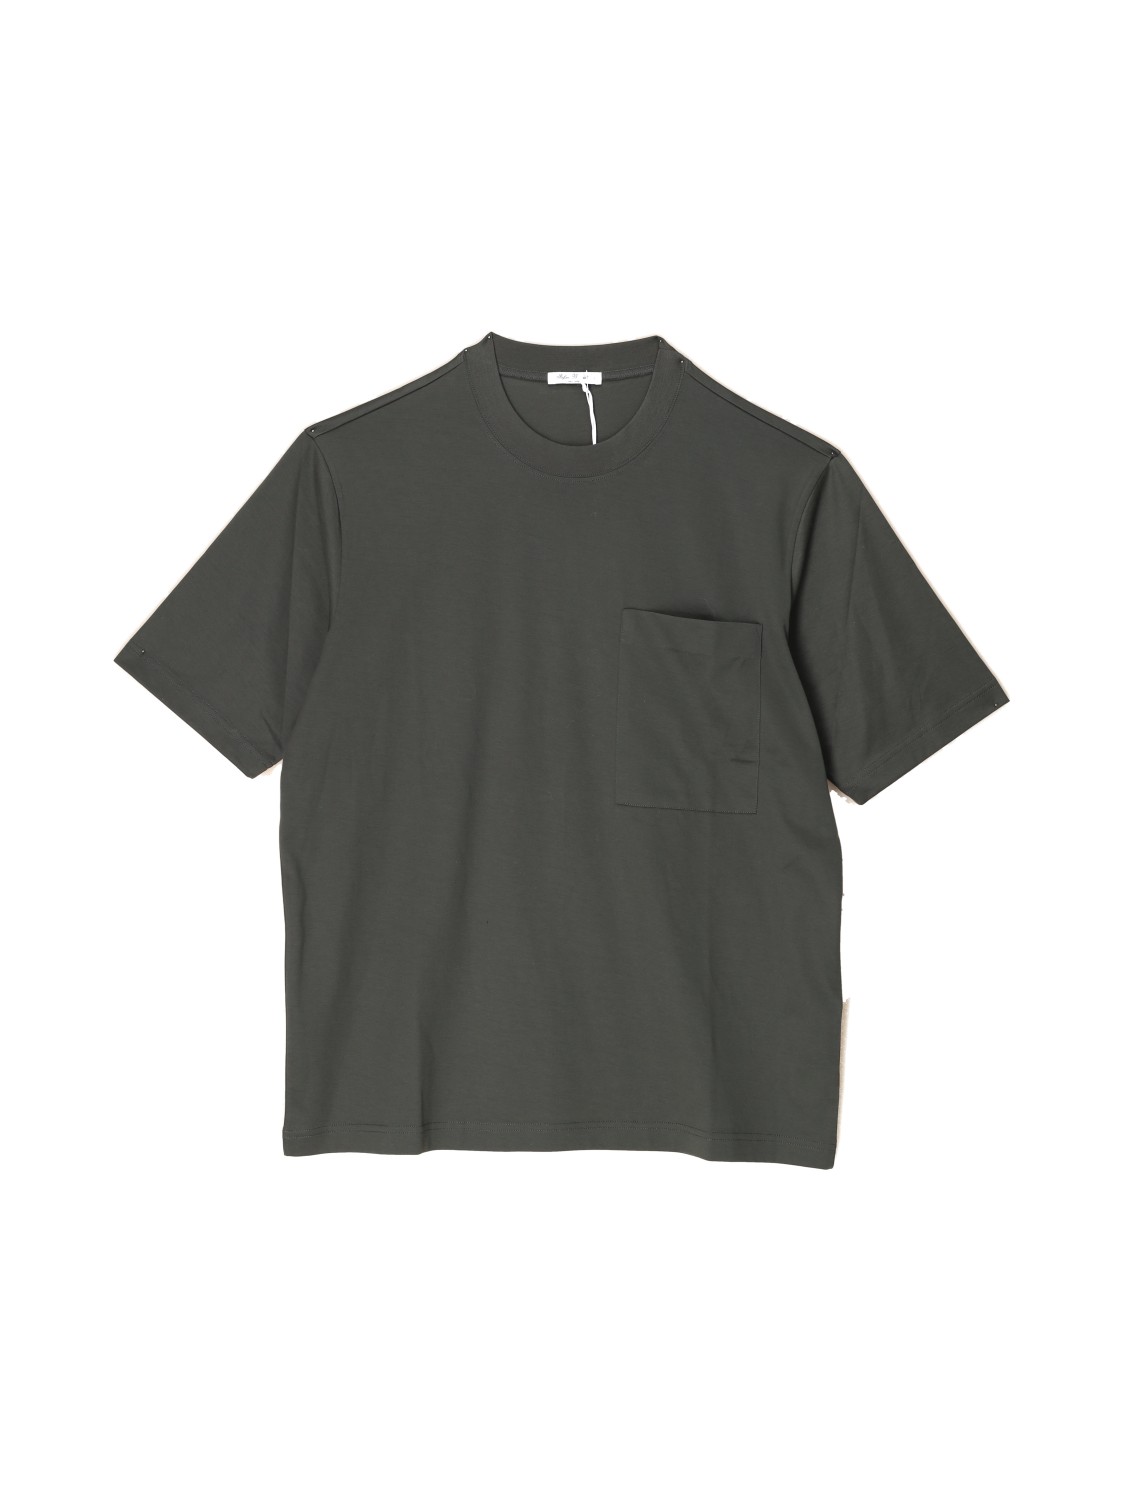 Stefan Brandt Eike - T-shirt en coton khaki M